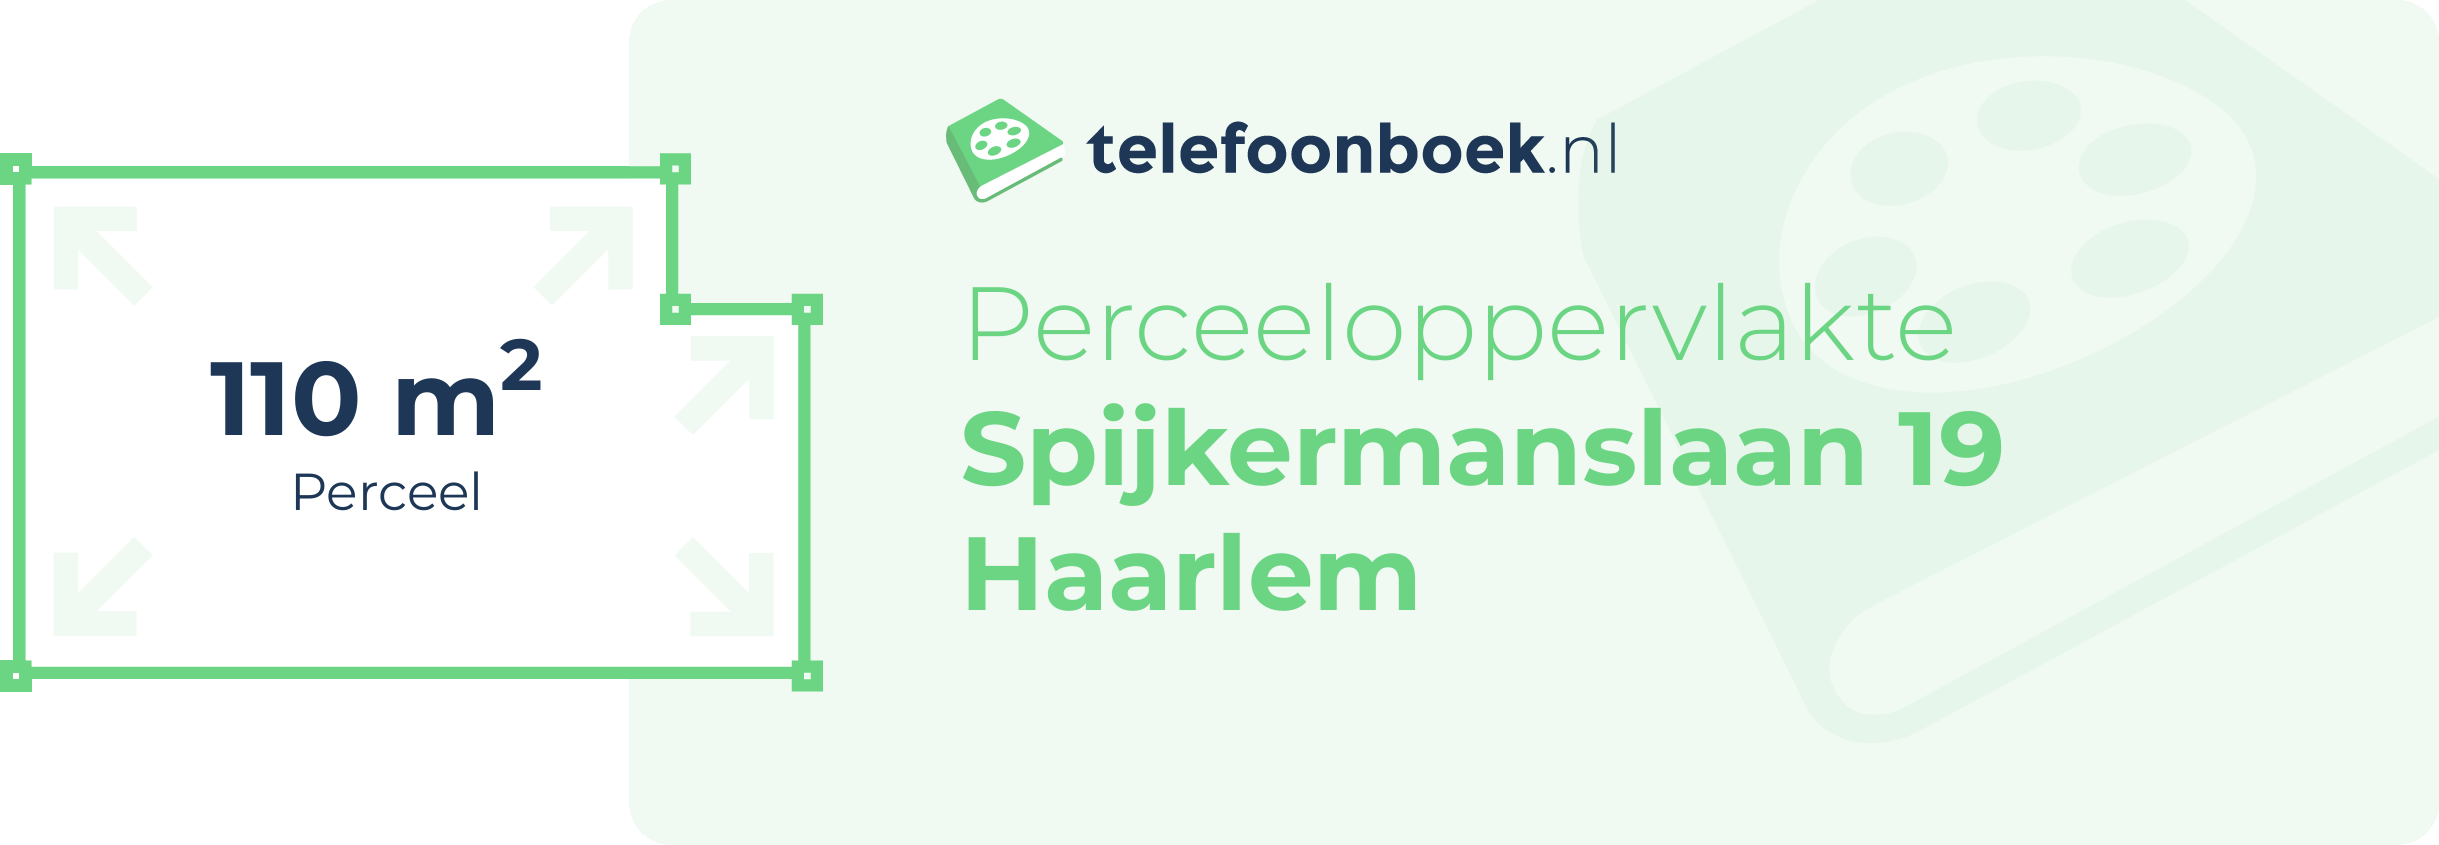 Perceeloppervlakte Spijkermanslaan 19 Haarlem